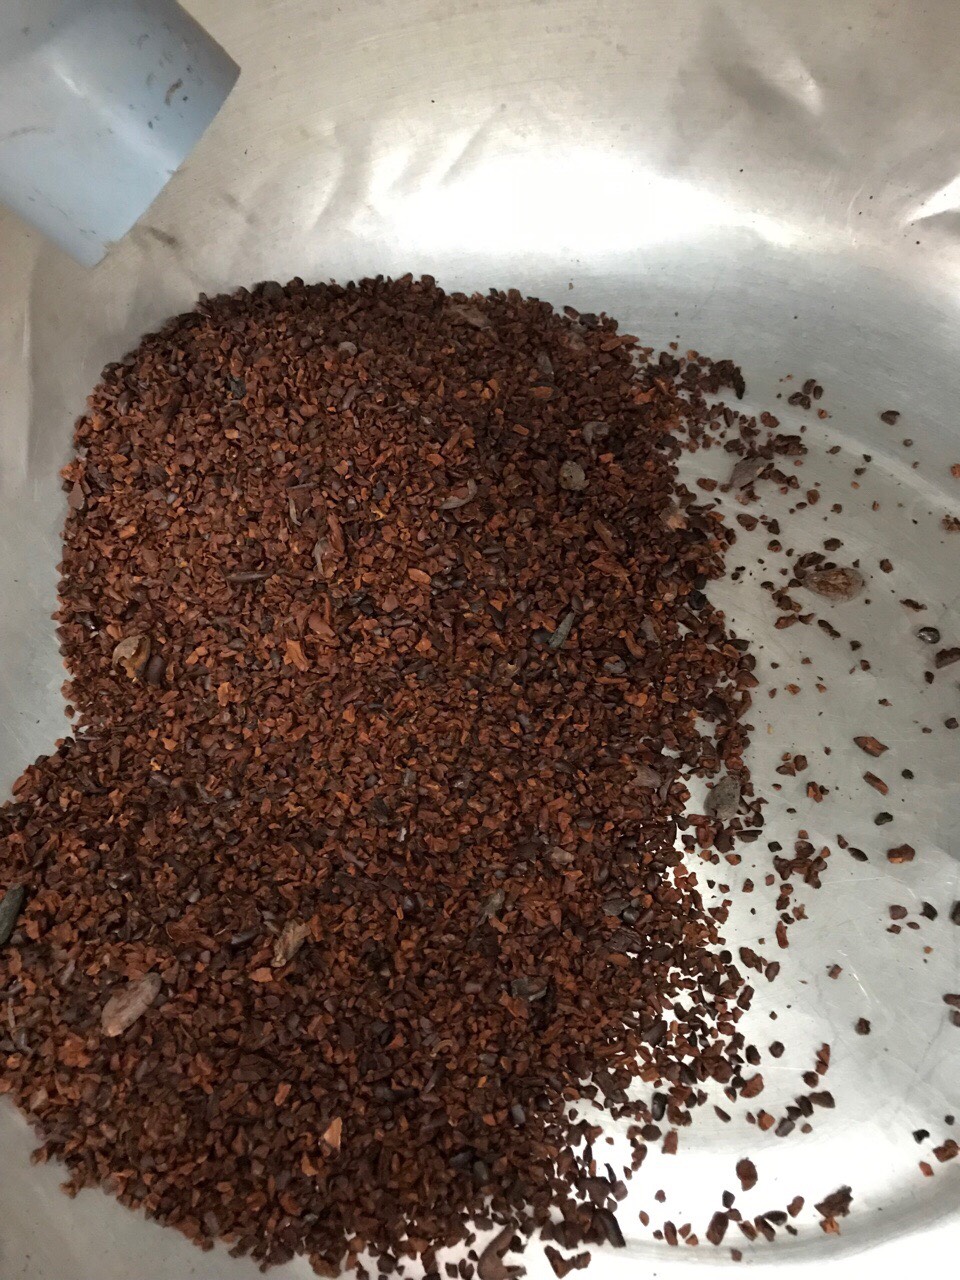 cacao sữa hoà tan uống liền, sản xuất tại đồng nai, nhãn hiệu dk harvest 1